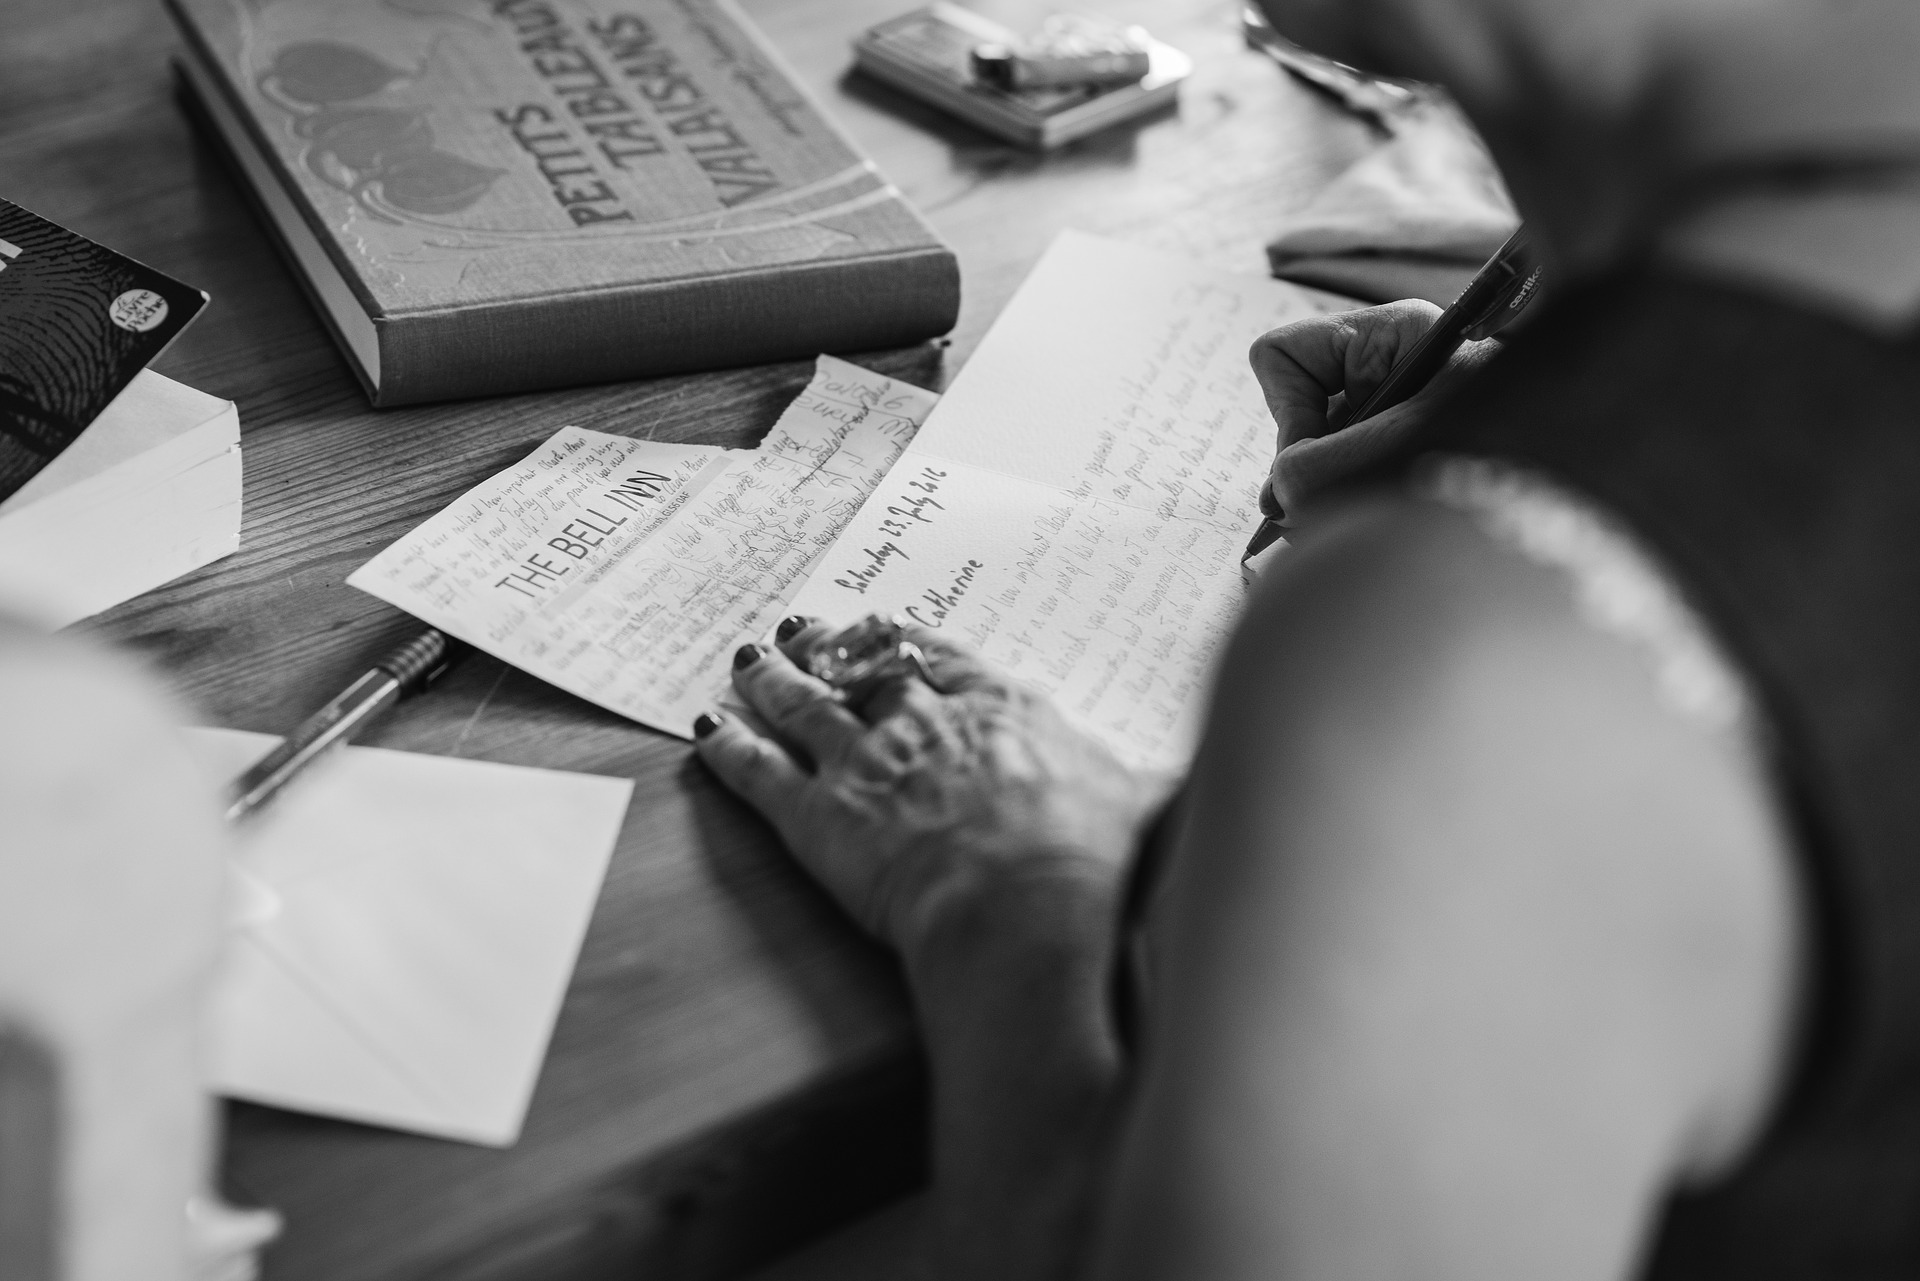 žena píšící dopis v cizím jazyce